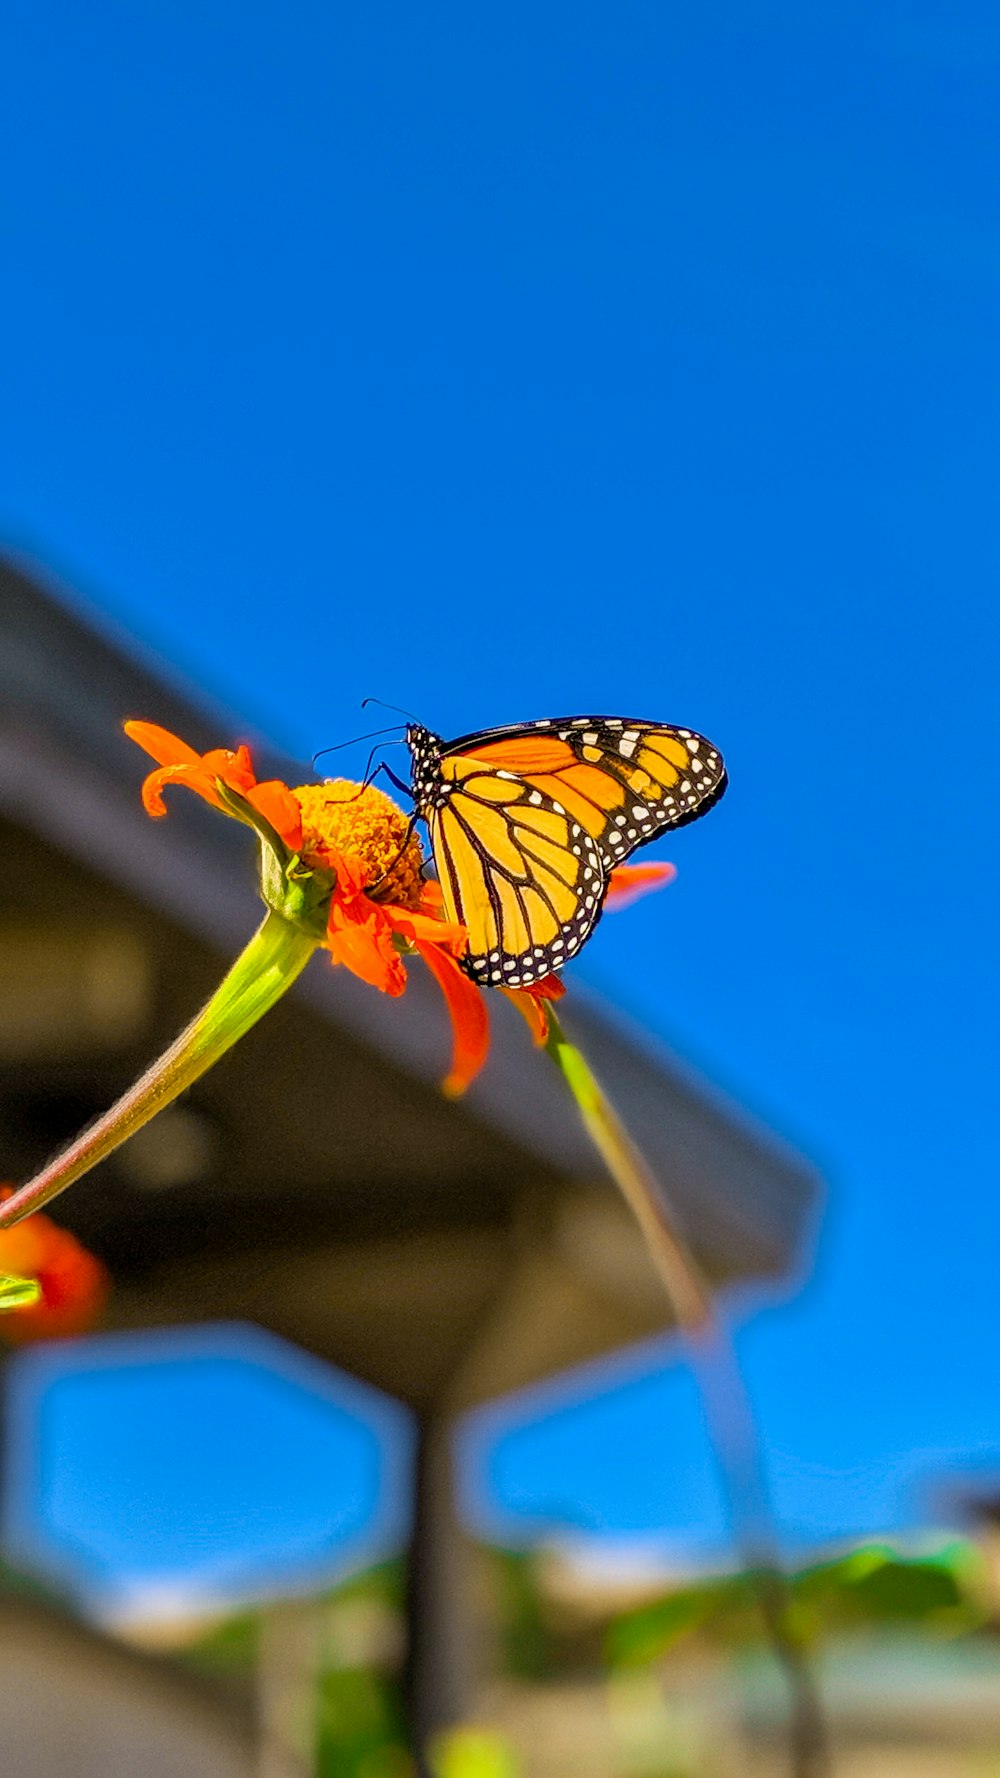 mariposa monarca encaramada en flor de naranja en fotografía de cerca durante el día